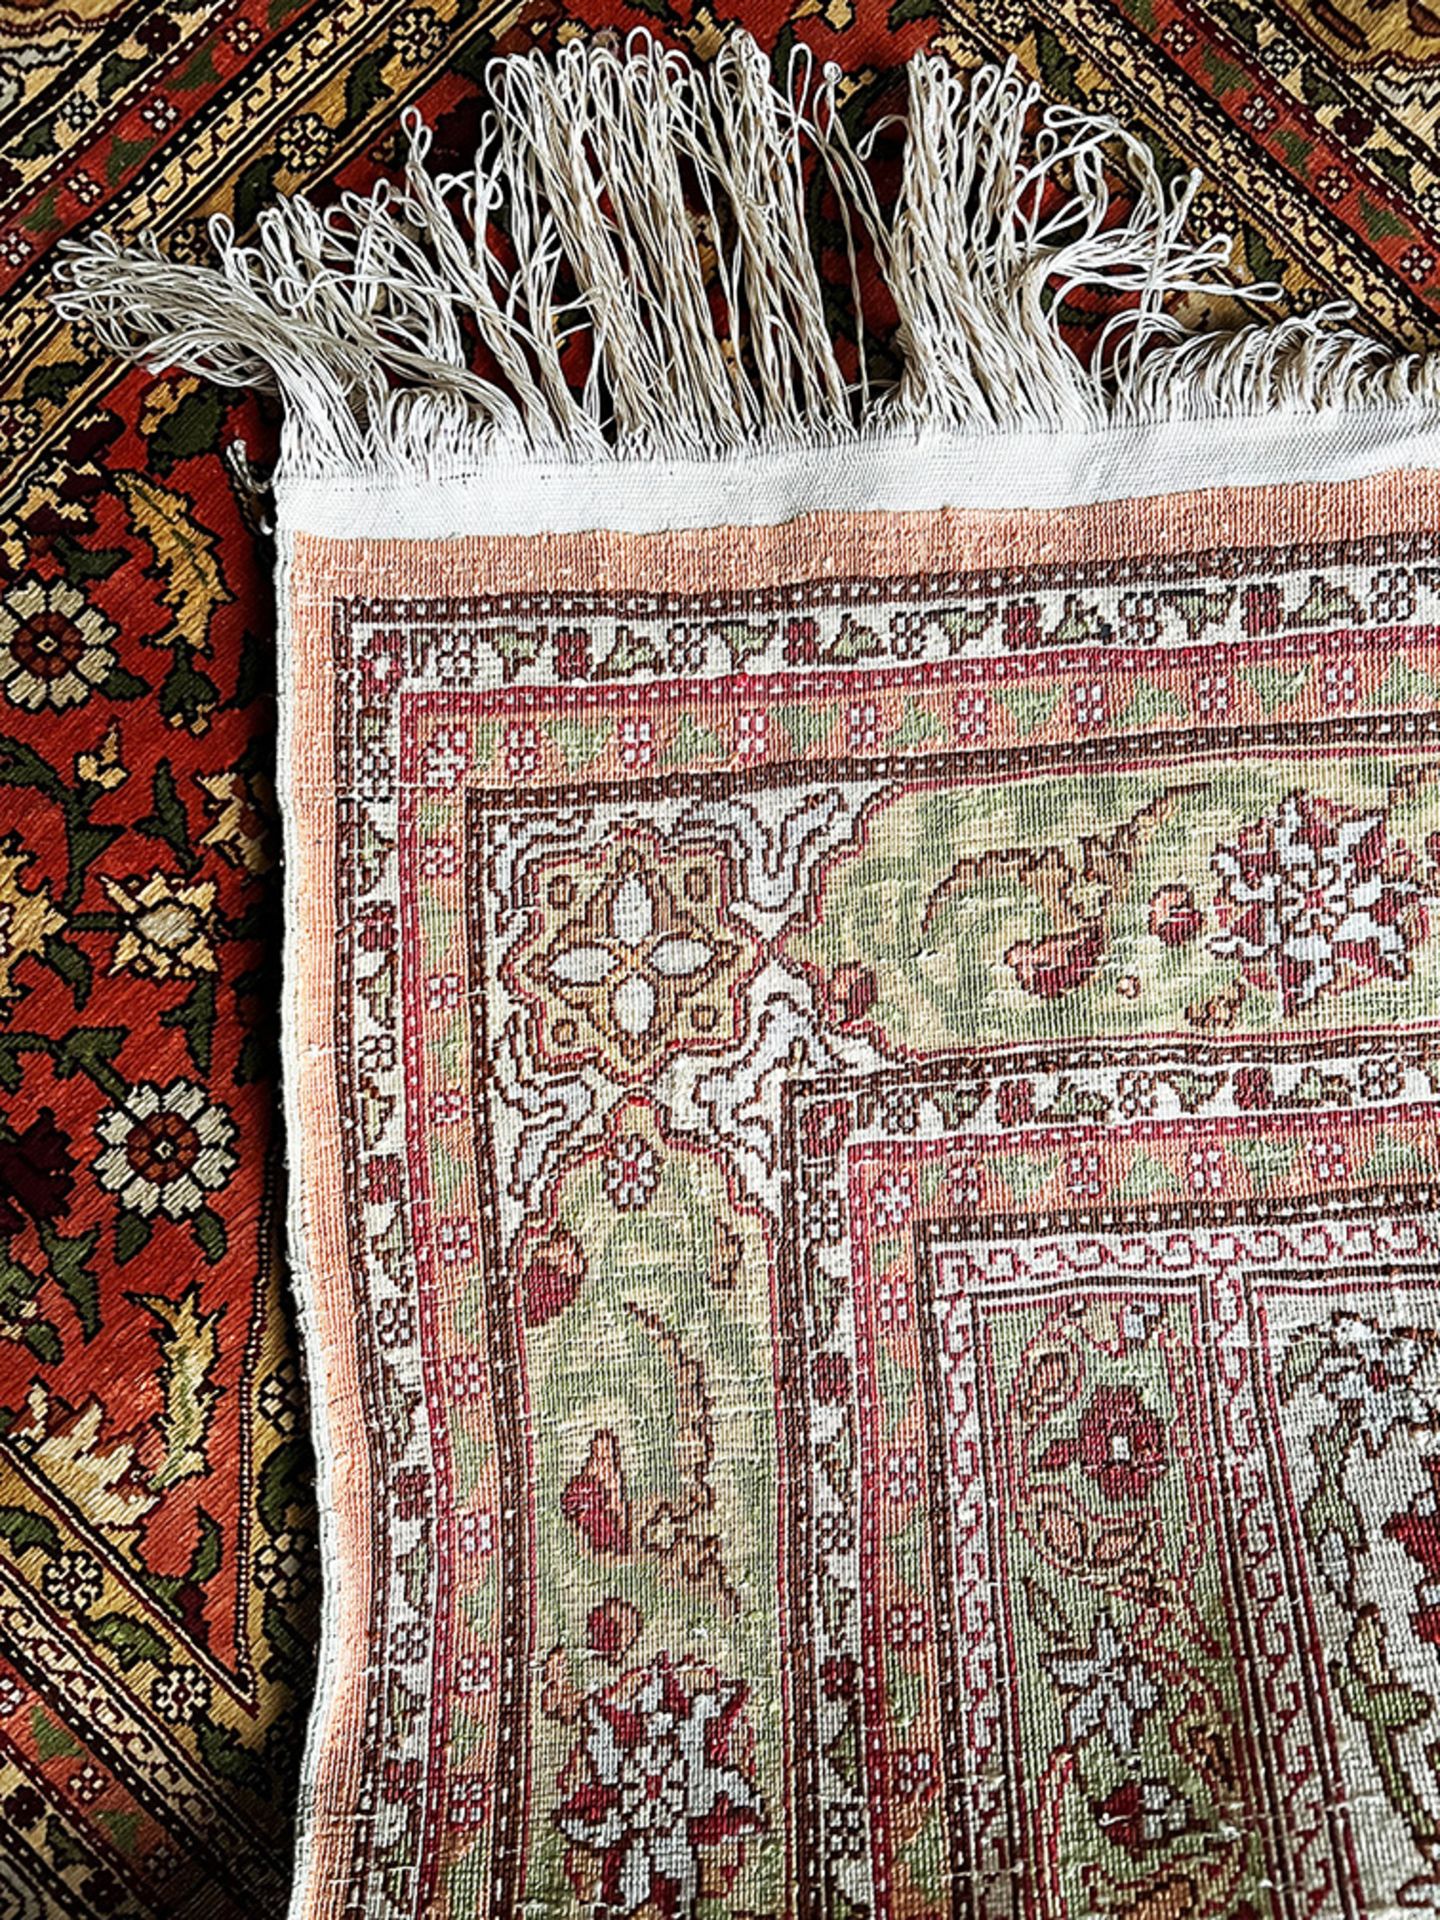 Teppich bzw. Wandteppich, Orient, Seide, mit arabischen Schriftzügen beschriftet, kaum Altersspuren, - Image 2 of 5